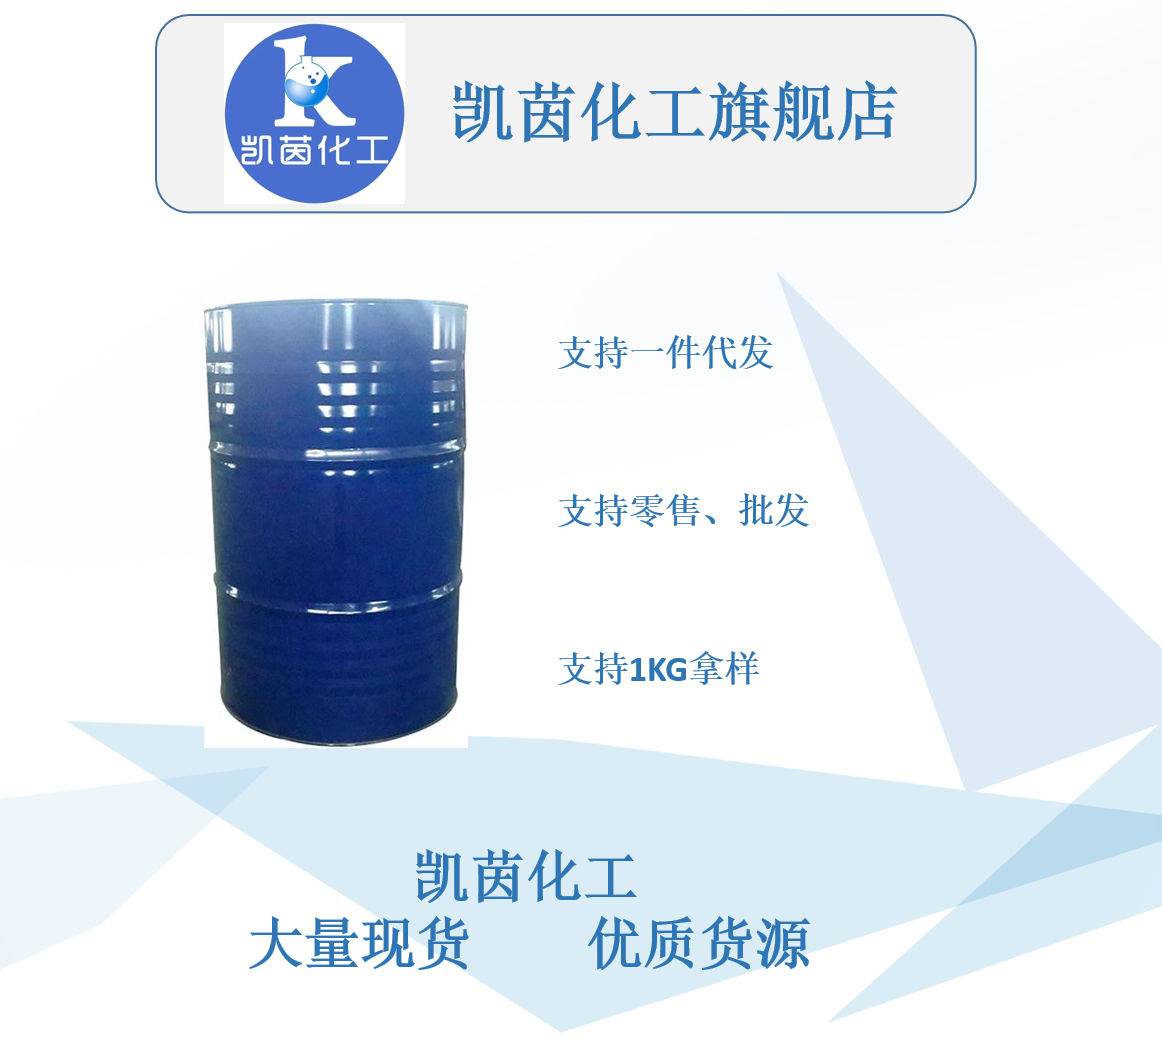 二甲基酰胺　优级DMF　DMF生产单位　二甲基酰胺行情 99.9% 南韩 190kg/桶